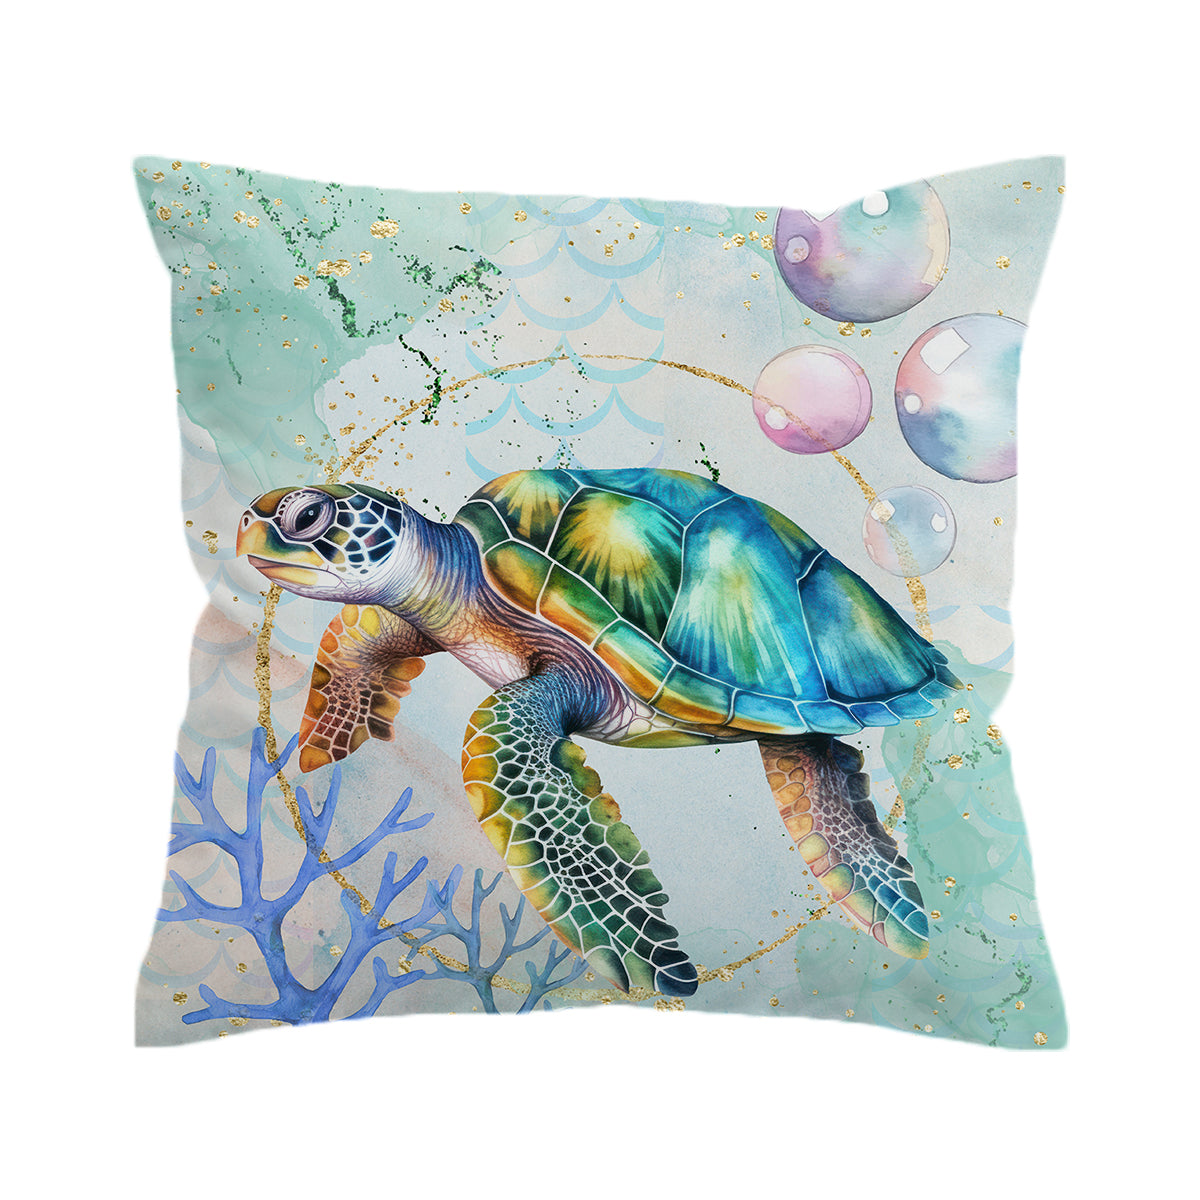 Dreamy Sea Turtle Pillow Cover